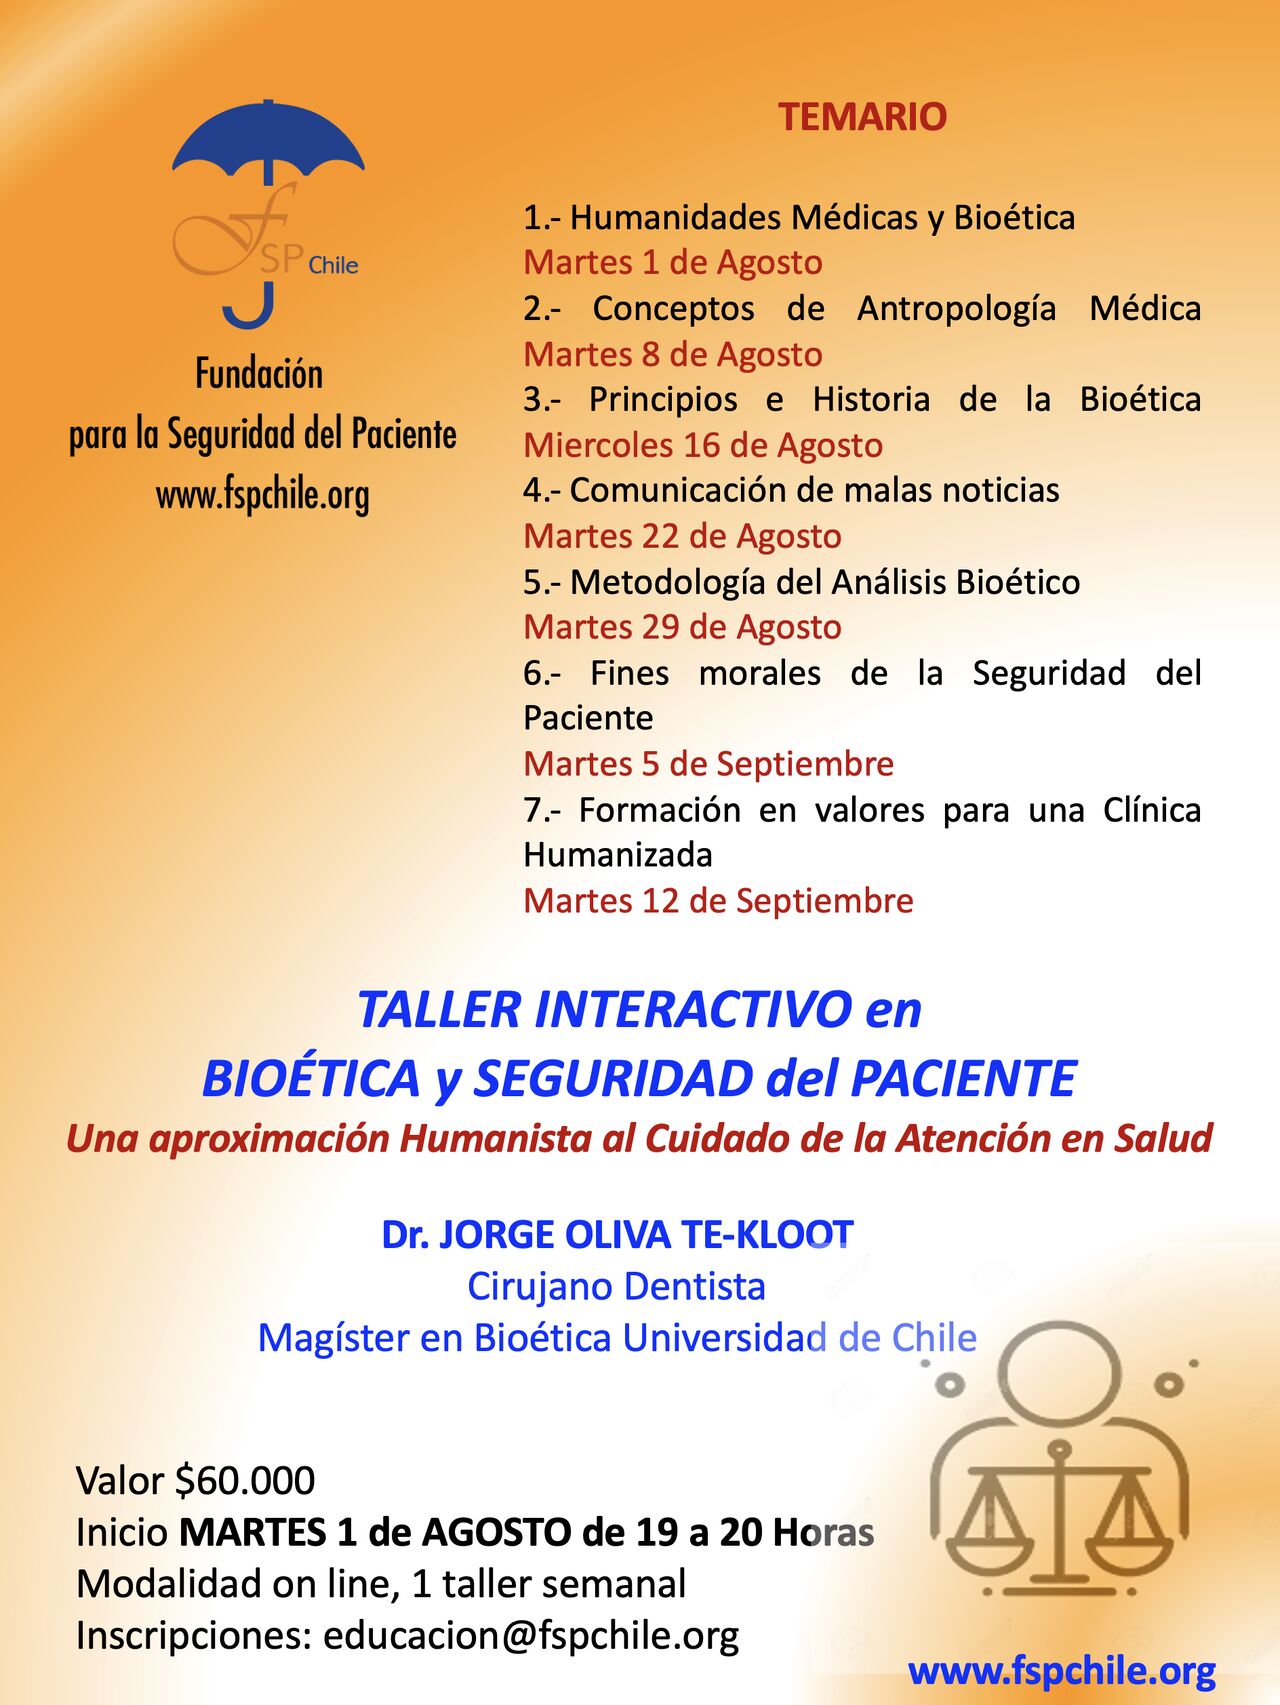 Serie de Talleres en Bioética.